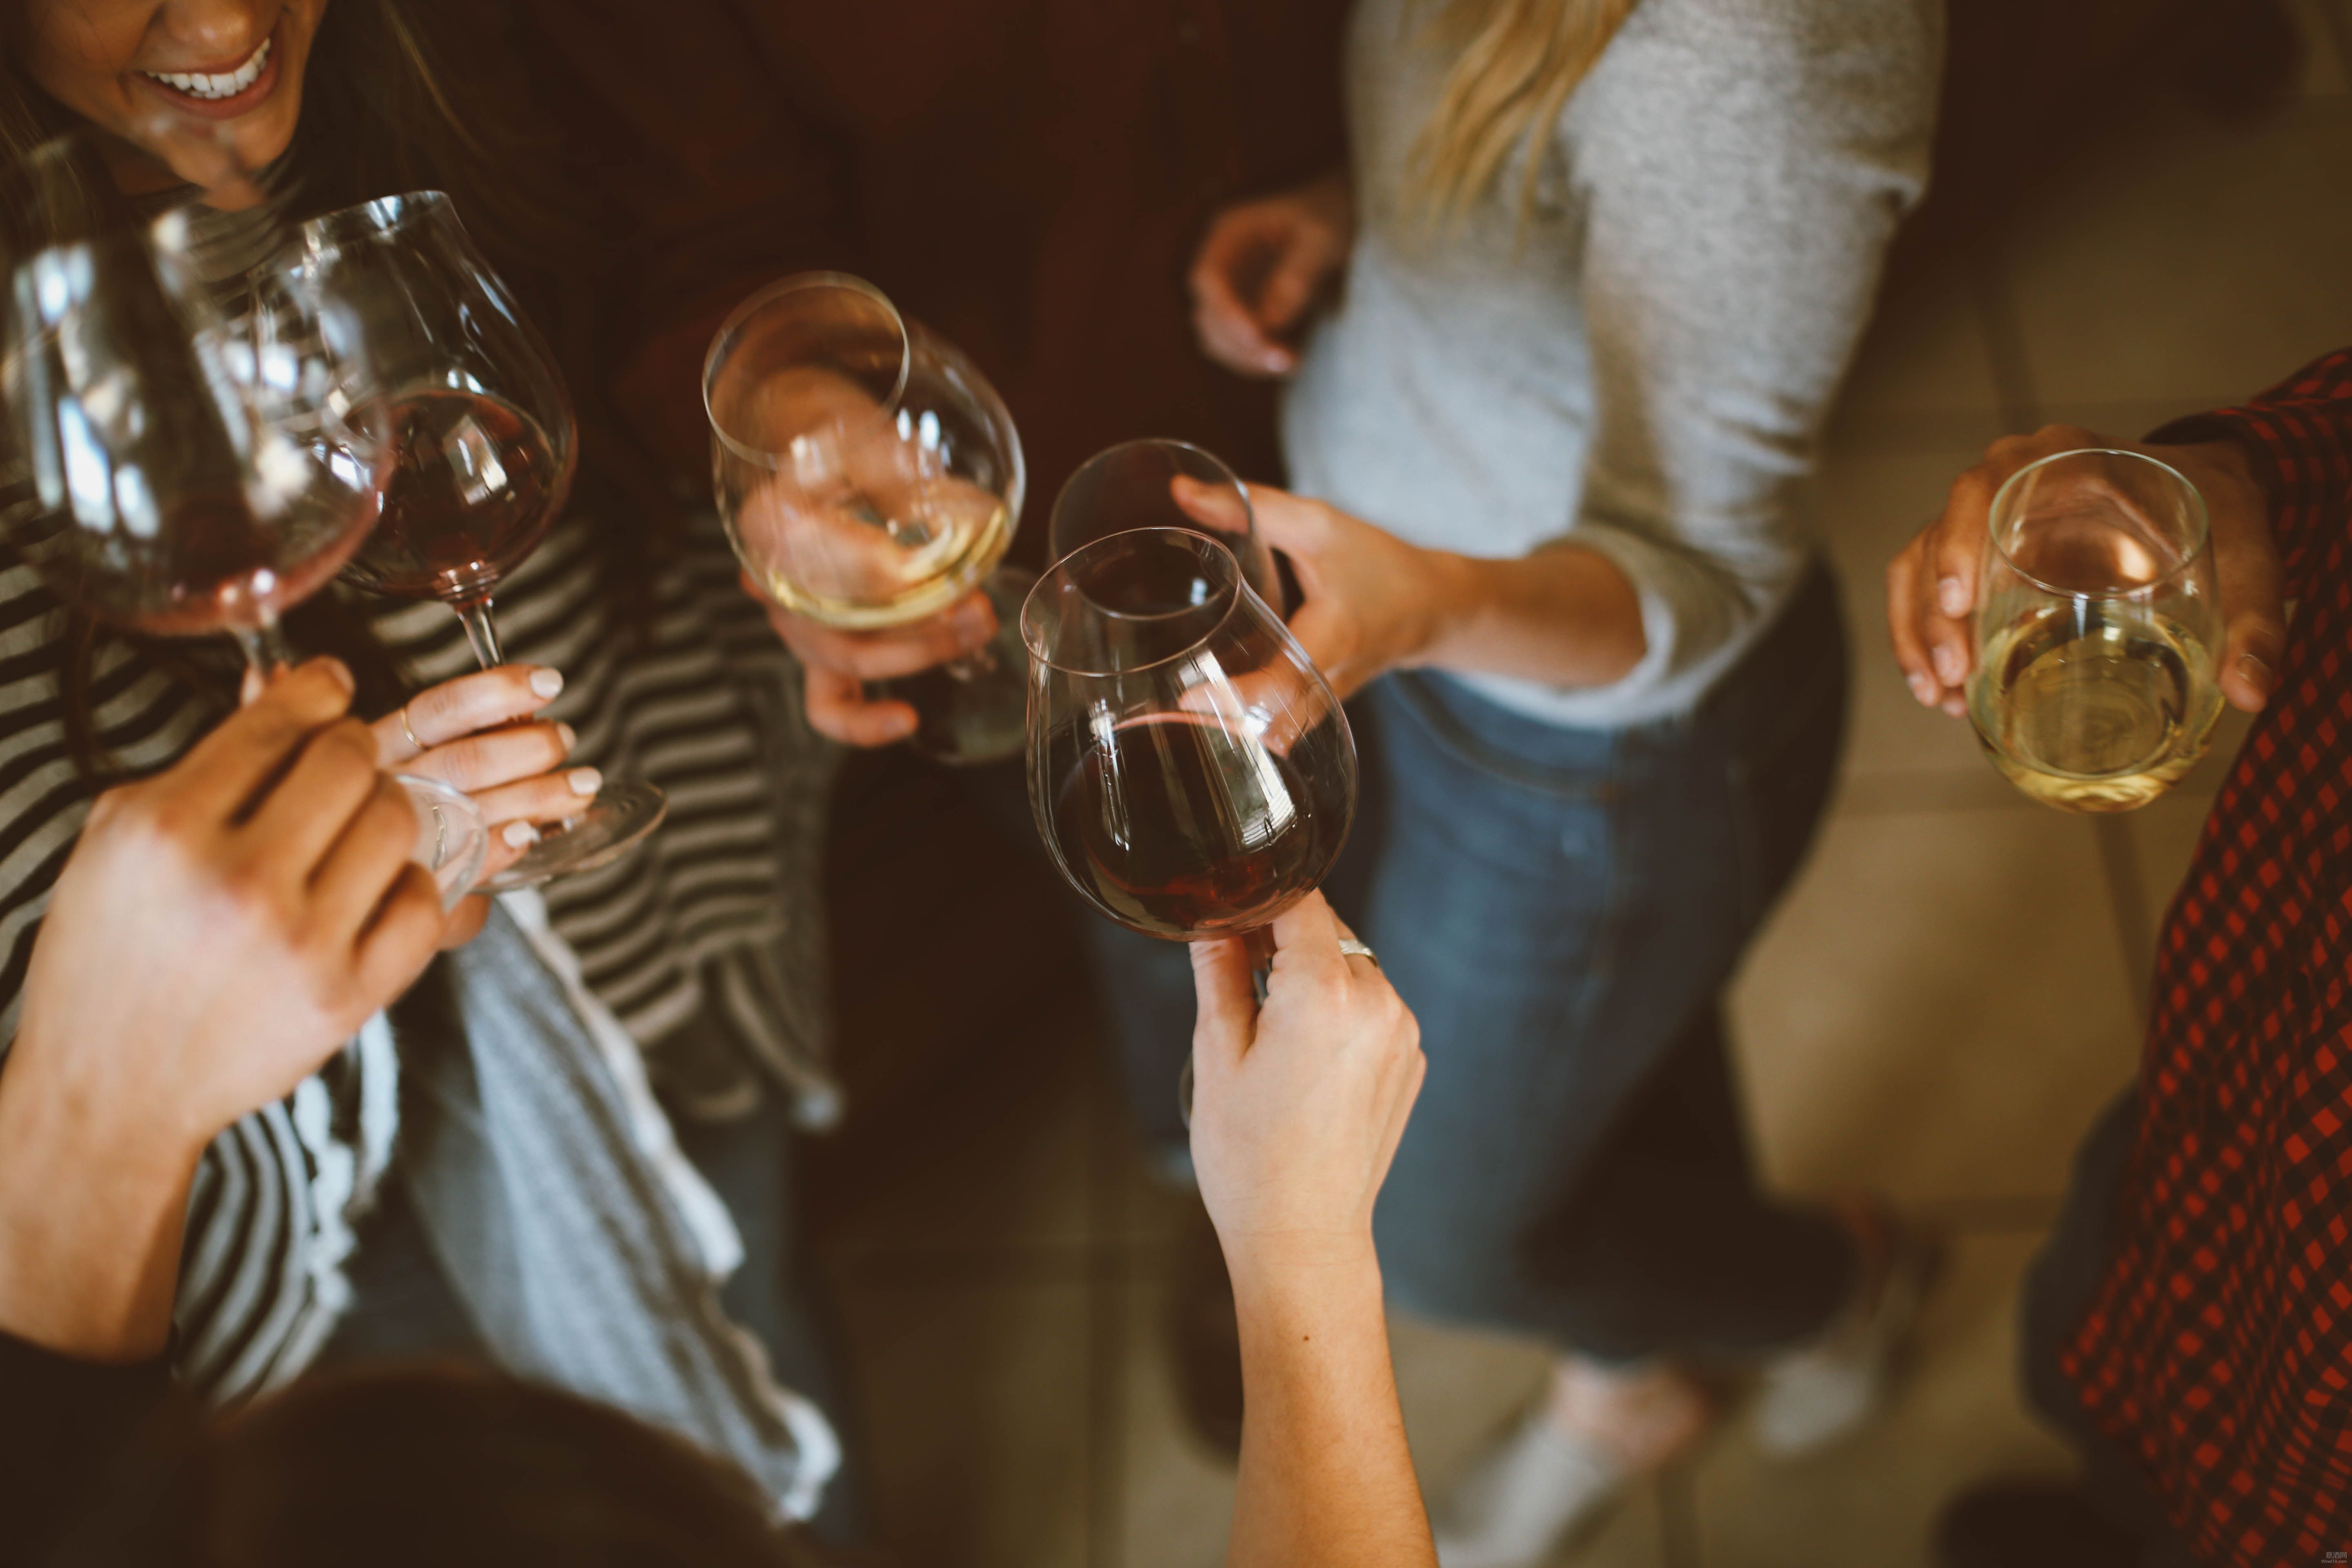 数据 | 意大利精品酒在国际市场竞争力持续提升 高端酒出口份额12年间增长超300%